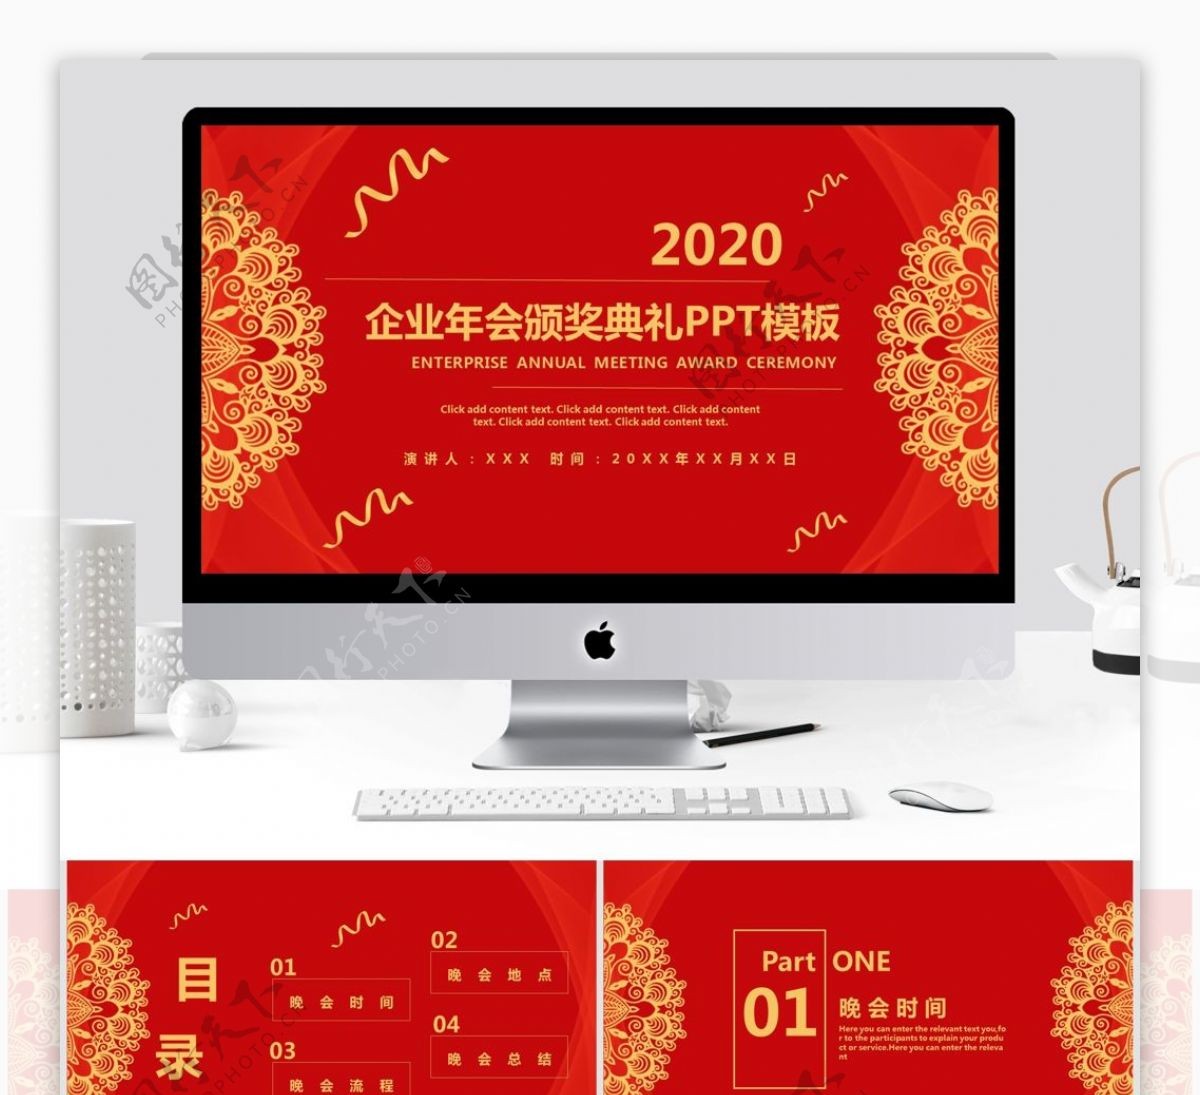 1炫酷2020企业年会颁奖典礼PPT模板